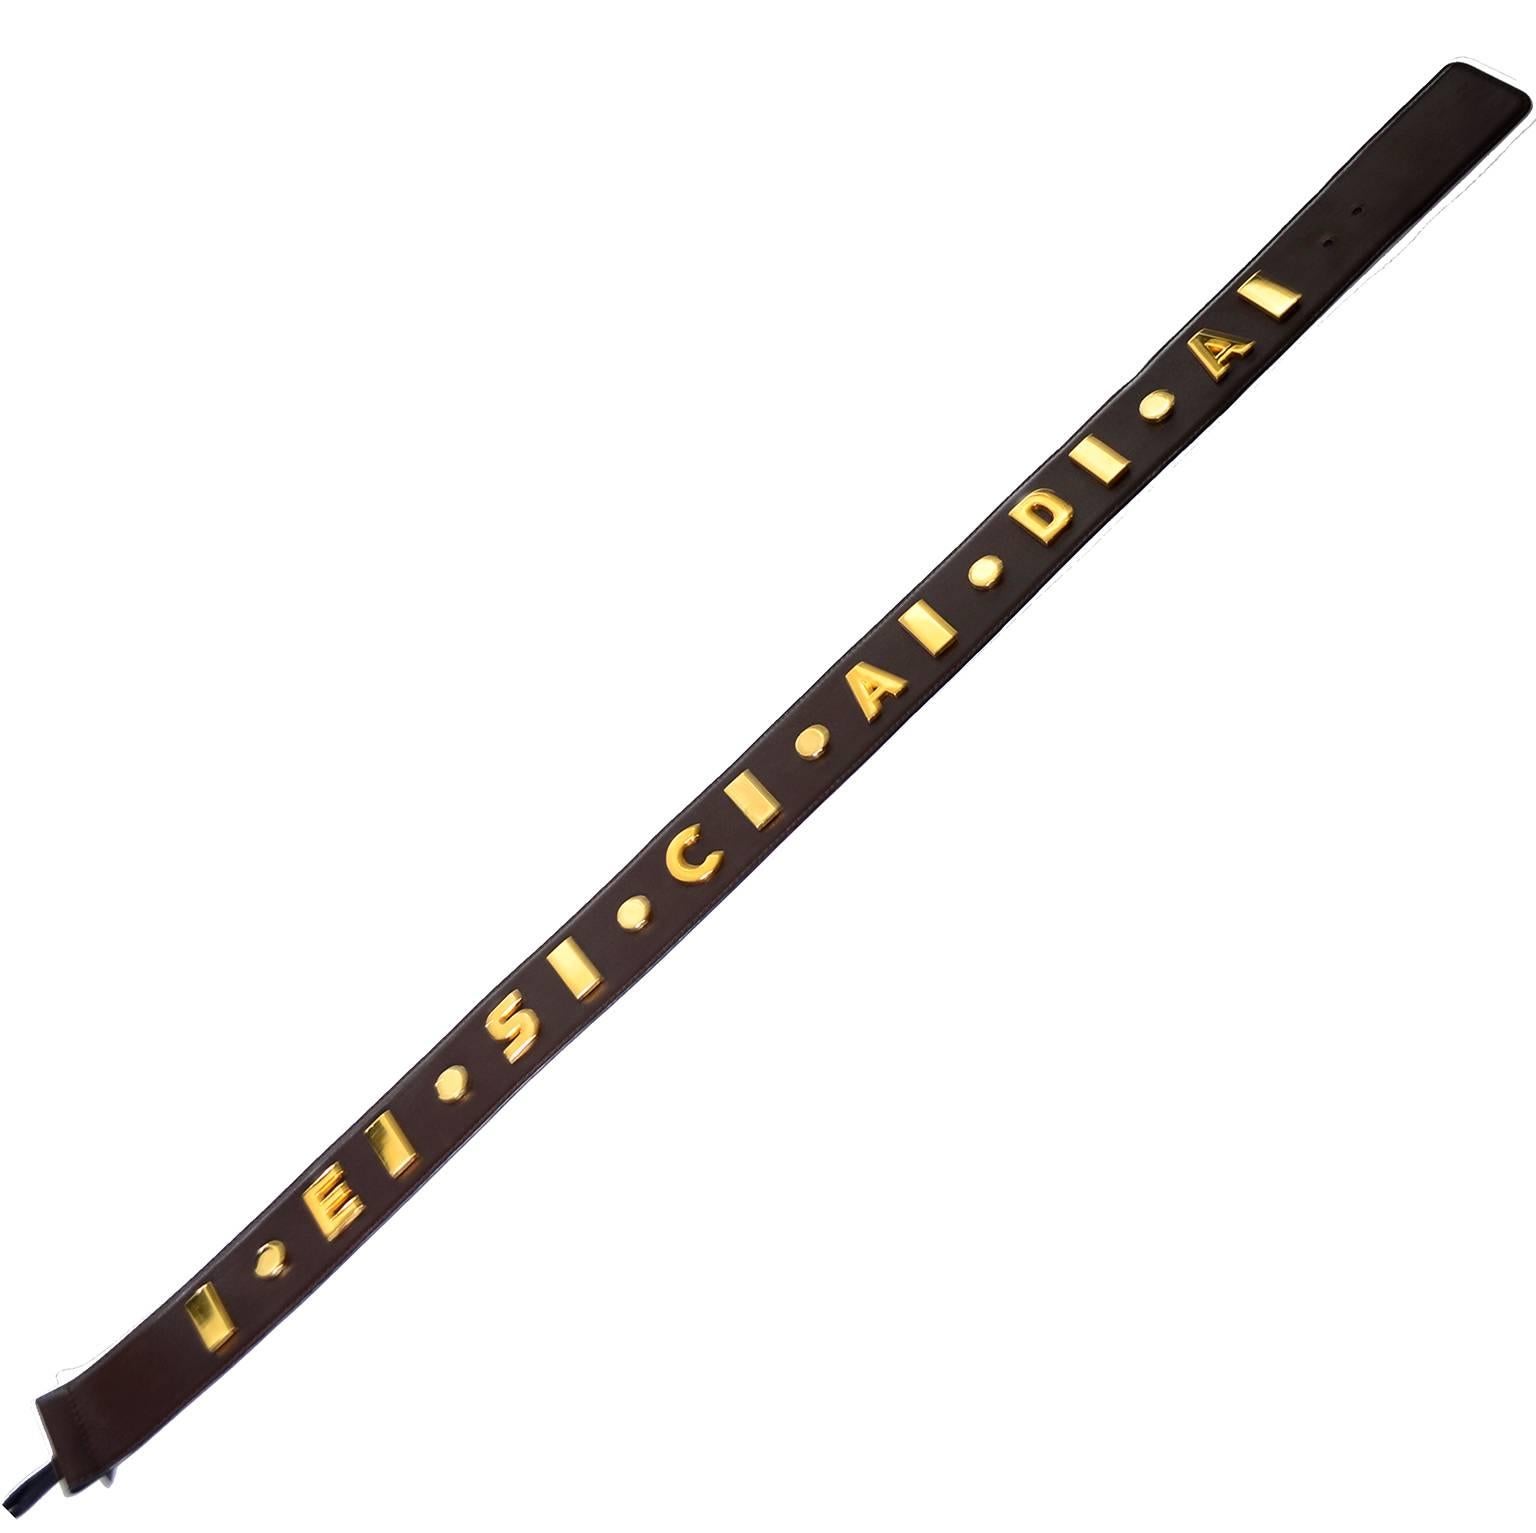 Cette ceinture vintage en cuir marron foncé d'Escada a été fabriquée en Allemagne de l'Ouest dans les années 1980. La ceinture était ornée de cercles et de rectangles dorés et de lettres épelant ESCADA. Le nouveau propriétaire ajoutera une boucle,